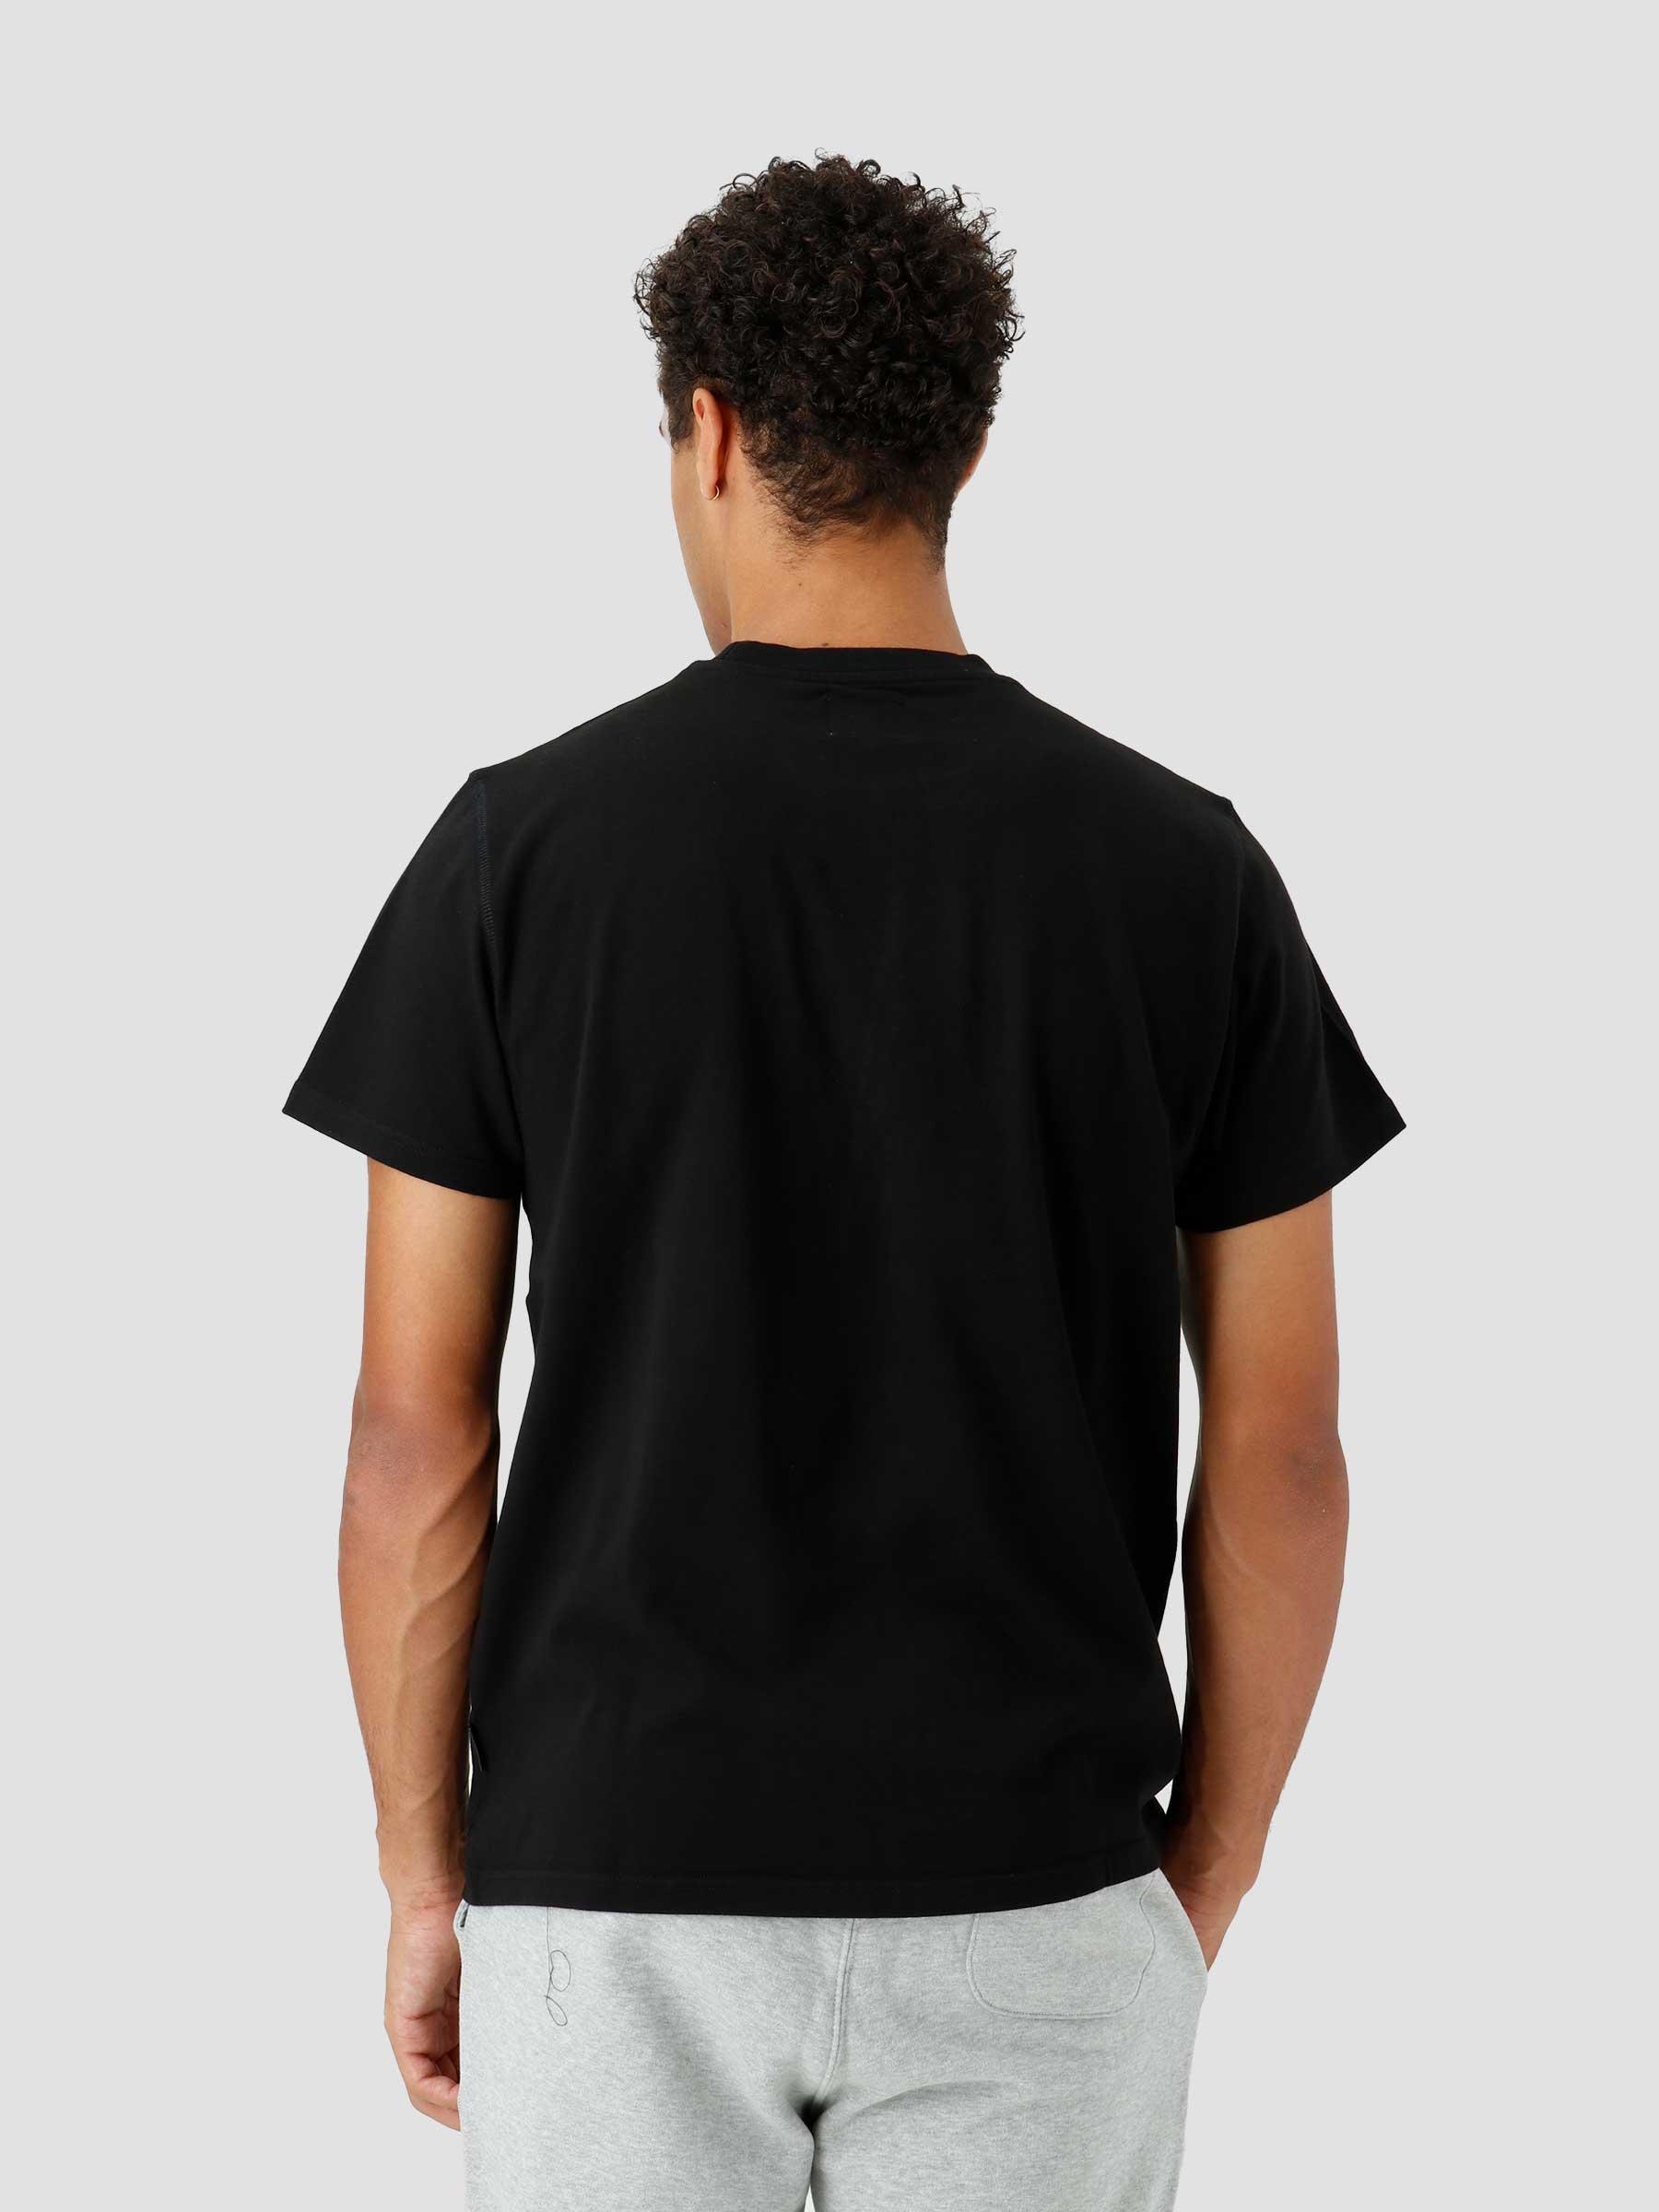 Turner Diels T-shirt Black AW22-149T